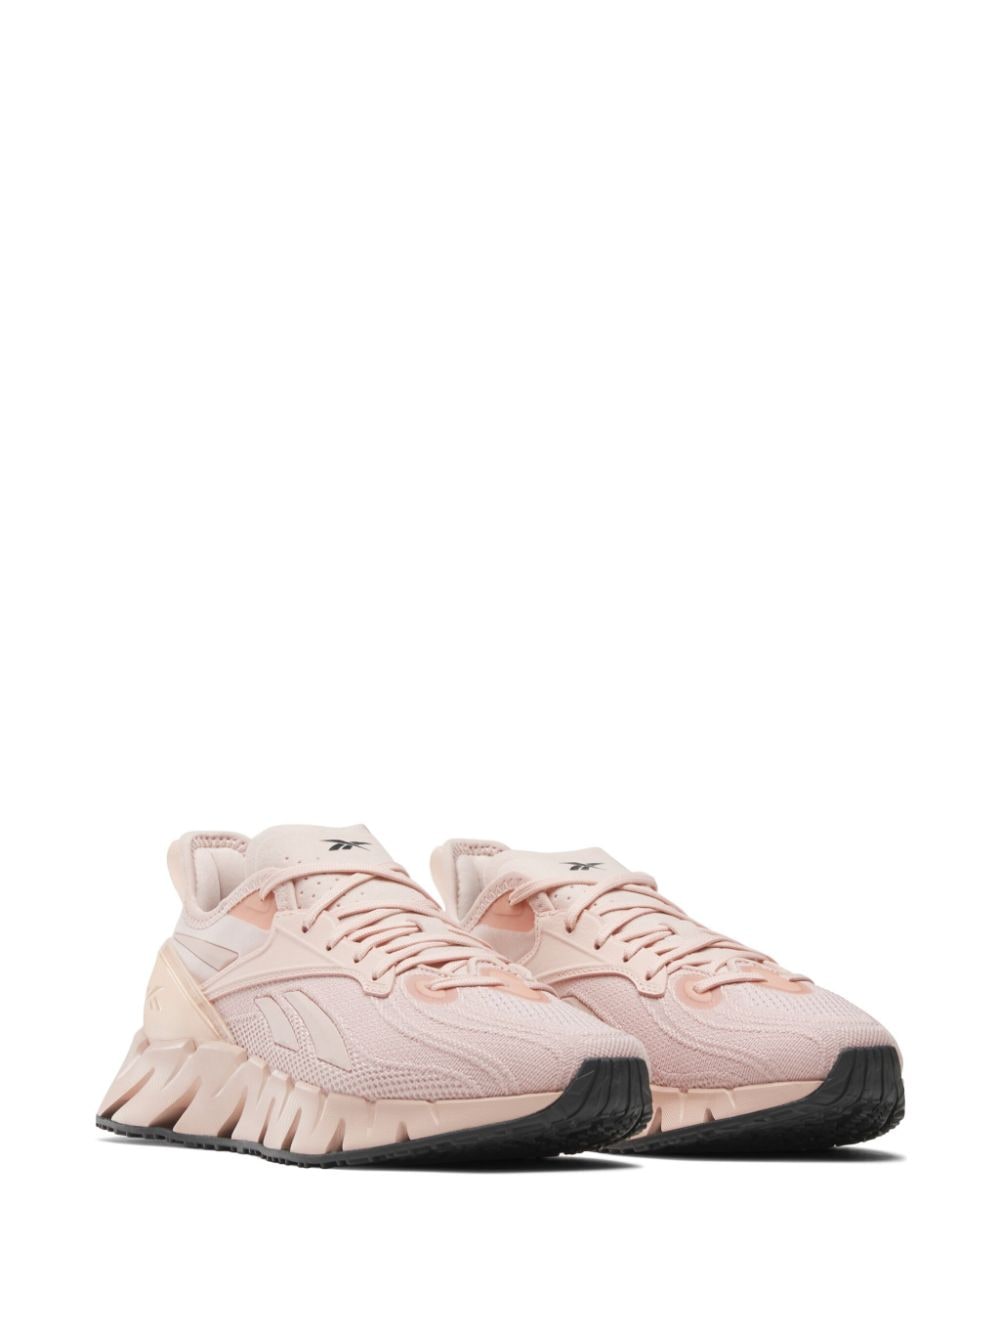 Shop Reebok Zig Kinetica 3 Sneakers In Pink